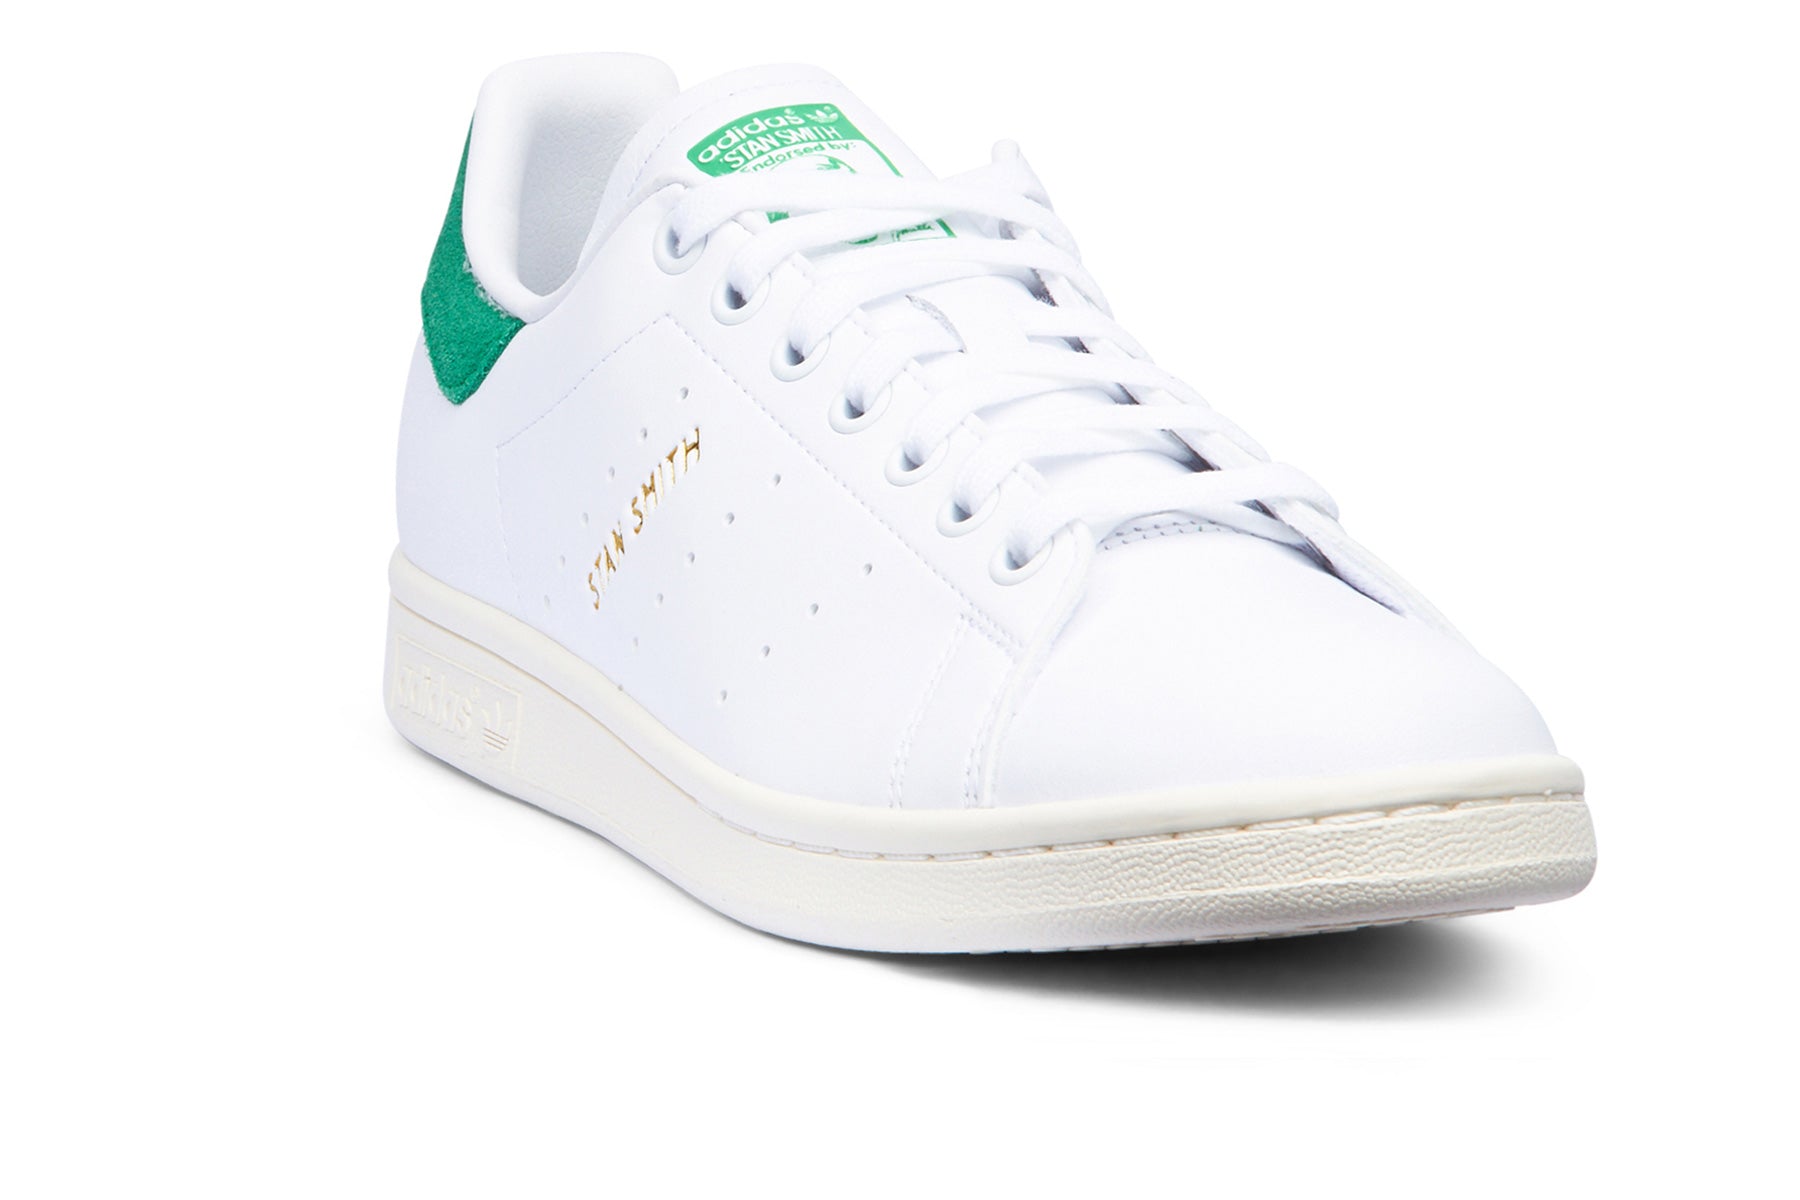 Adidas Stan Smith - FTWR White/Green/Off White